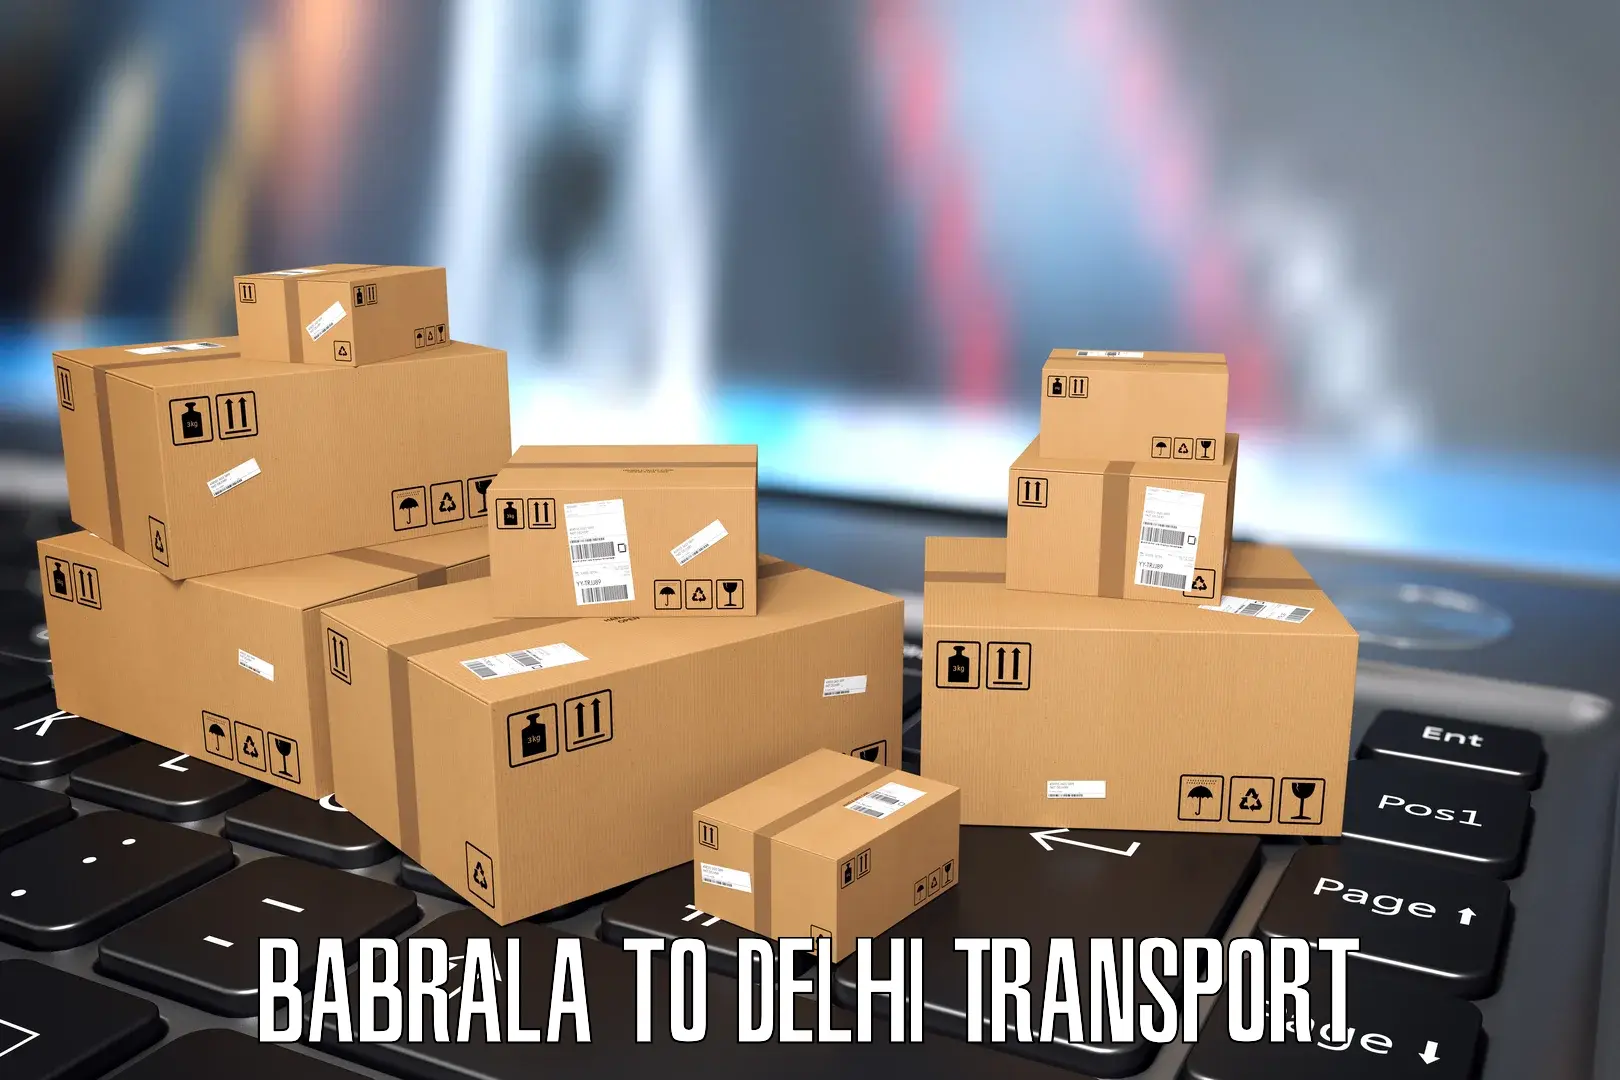 Interstate goods transport Babrala to Lodhi Road